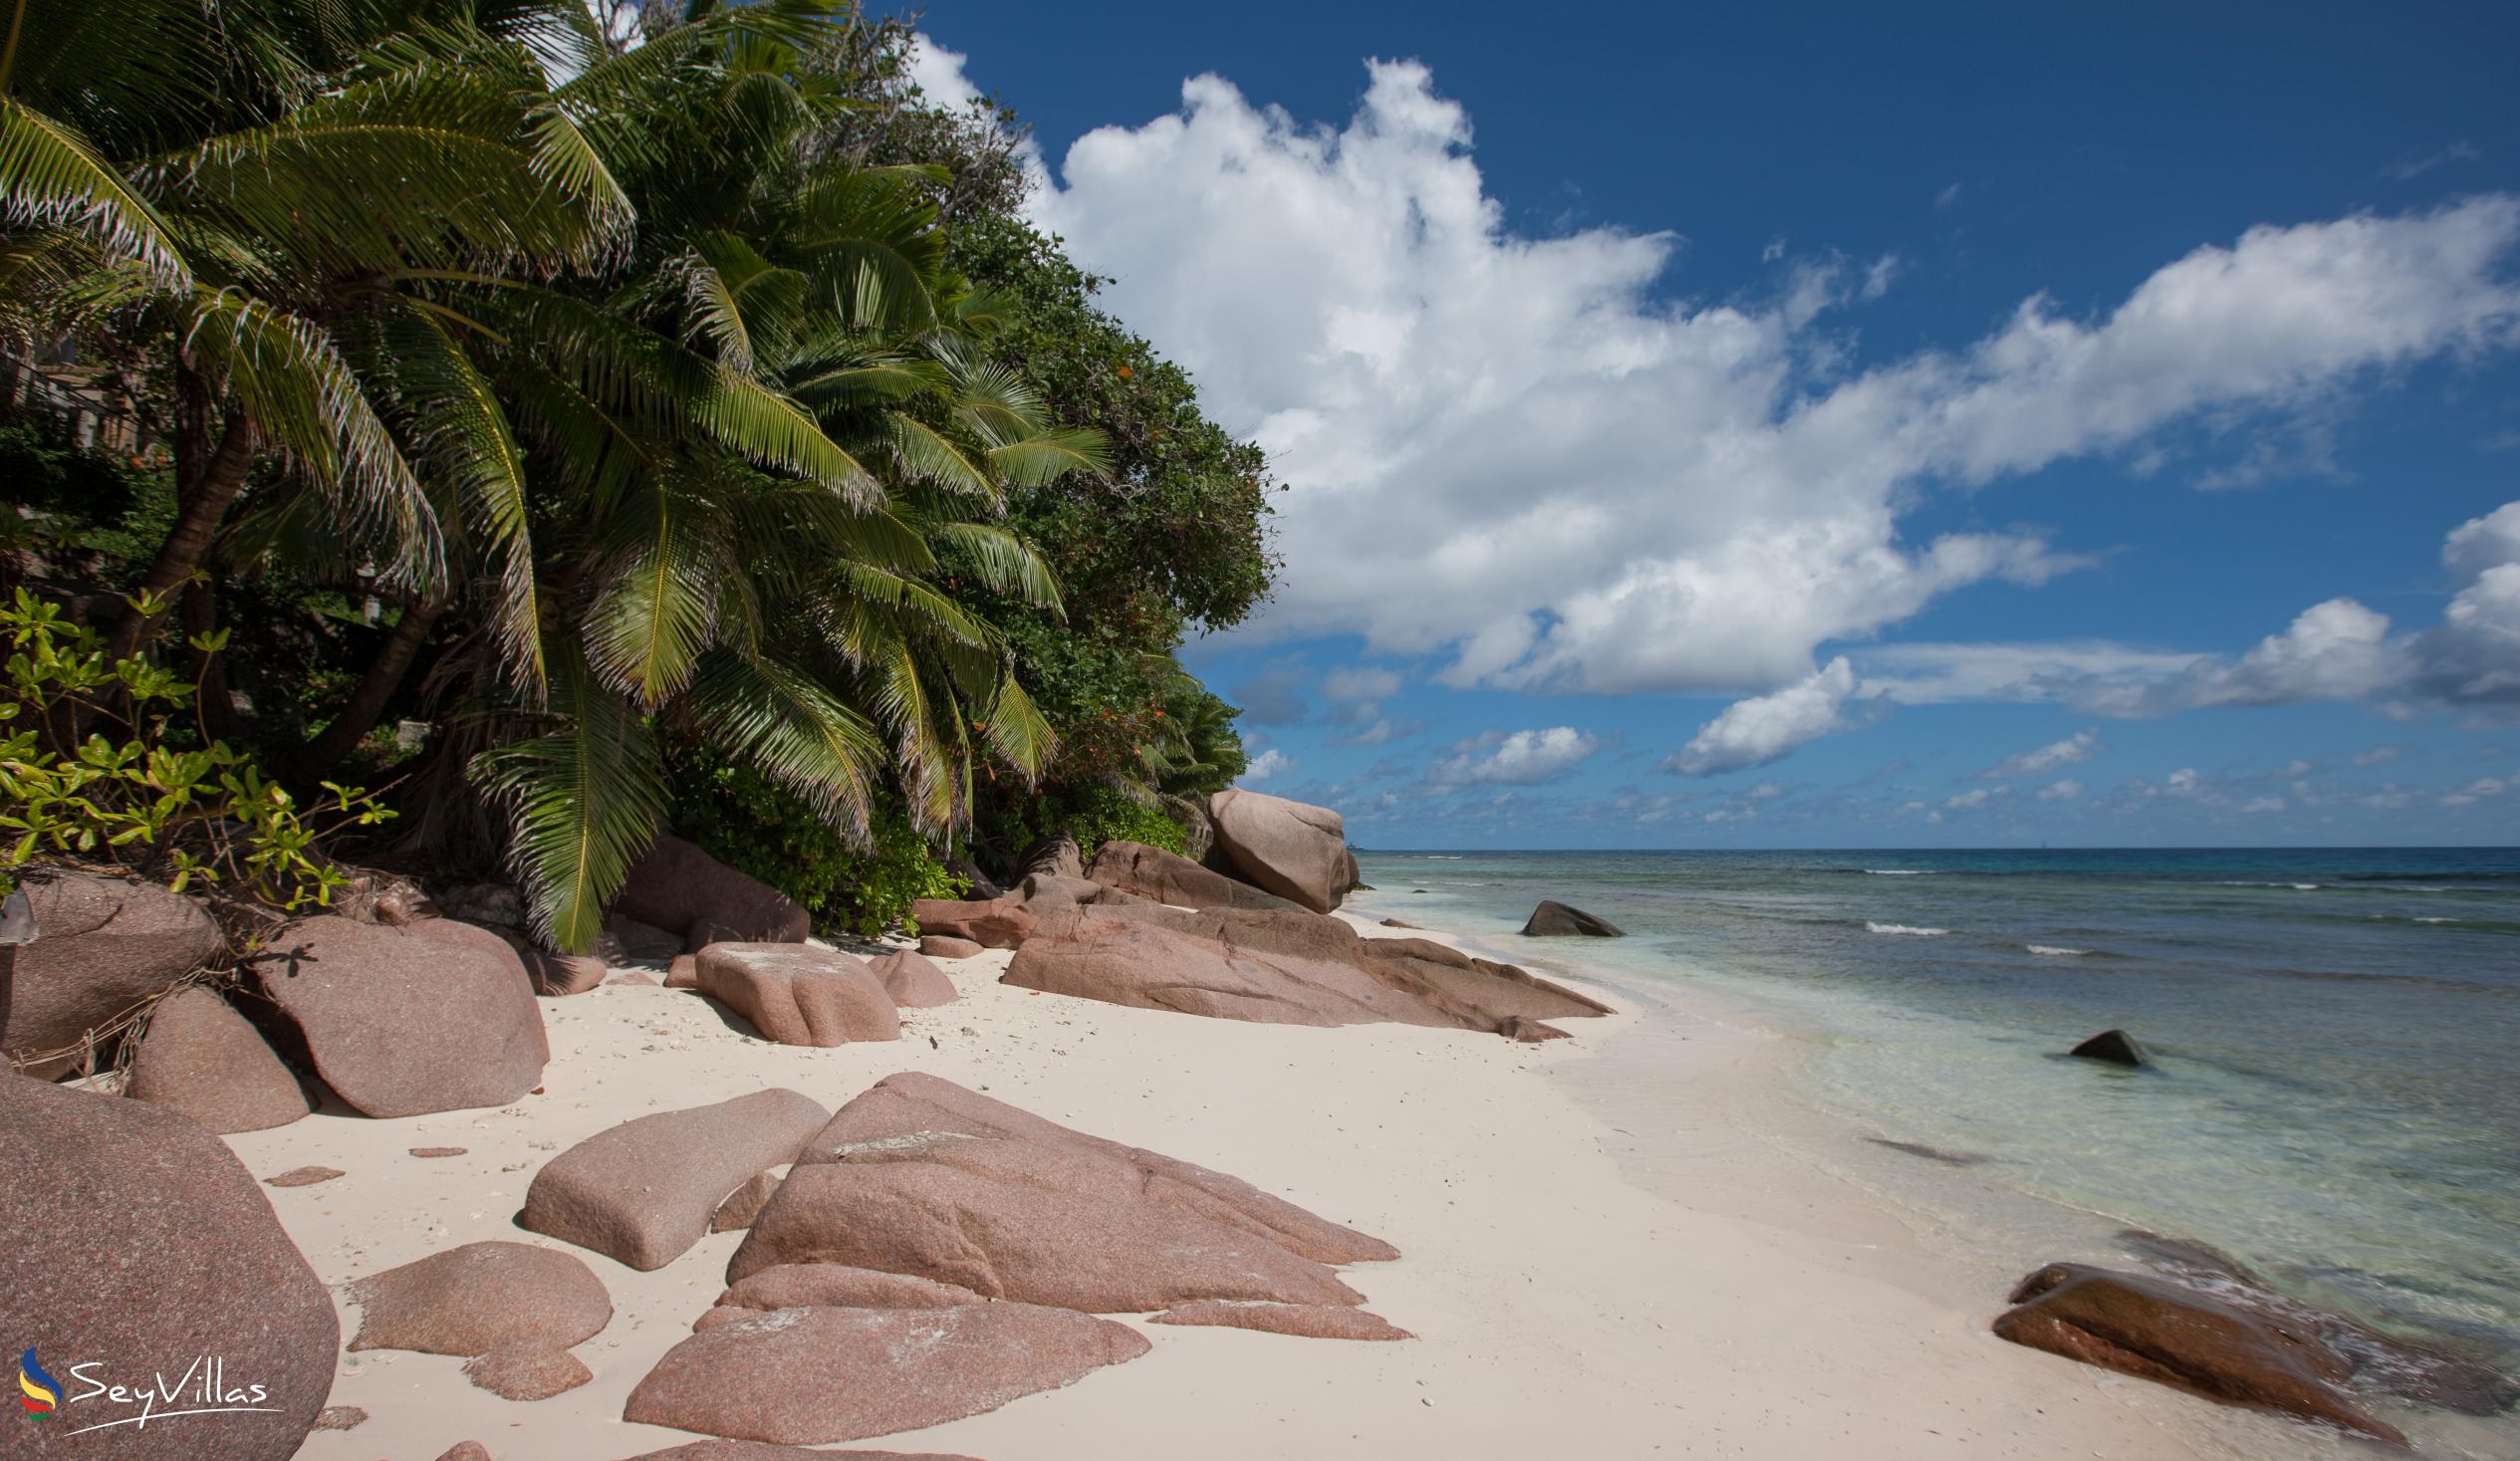 Foto 1: Anse Gaulettes - La Digue (Seychelles)